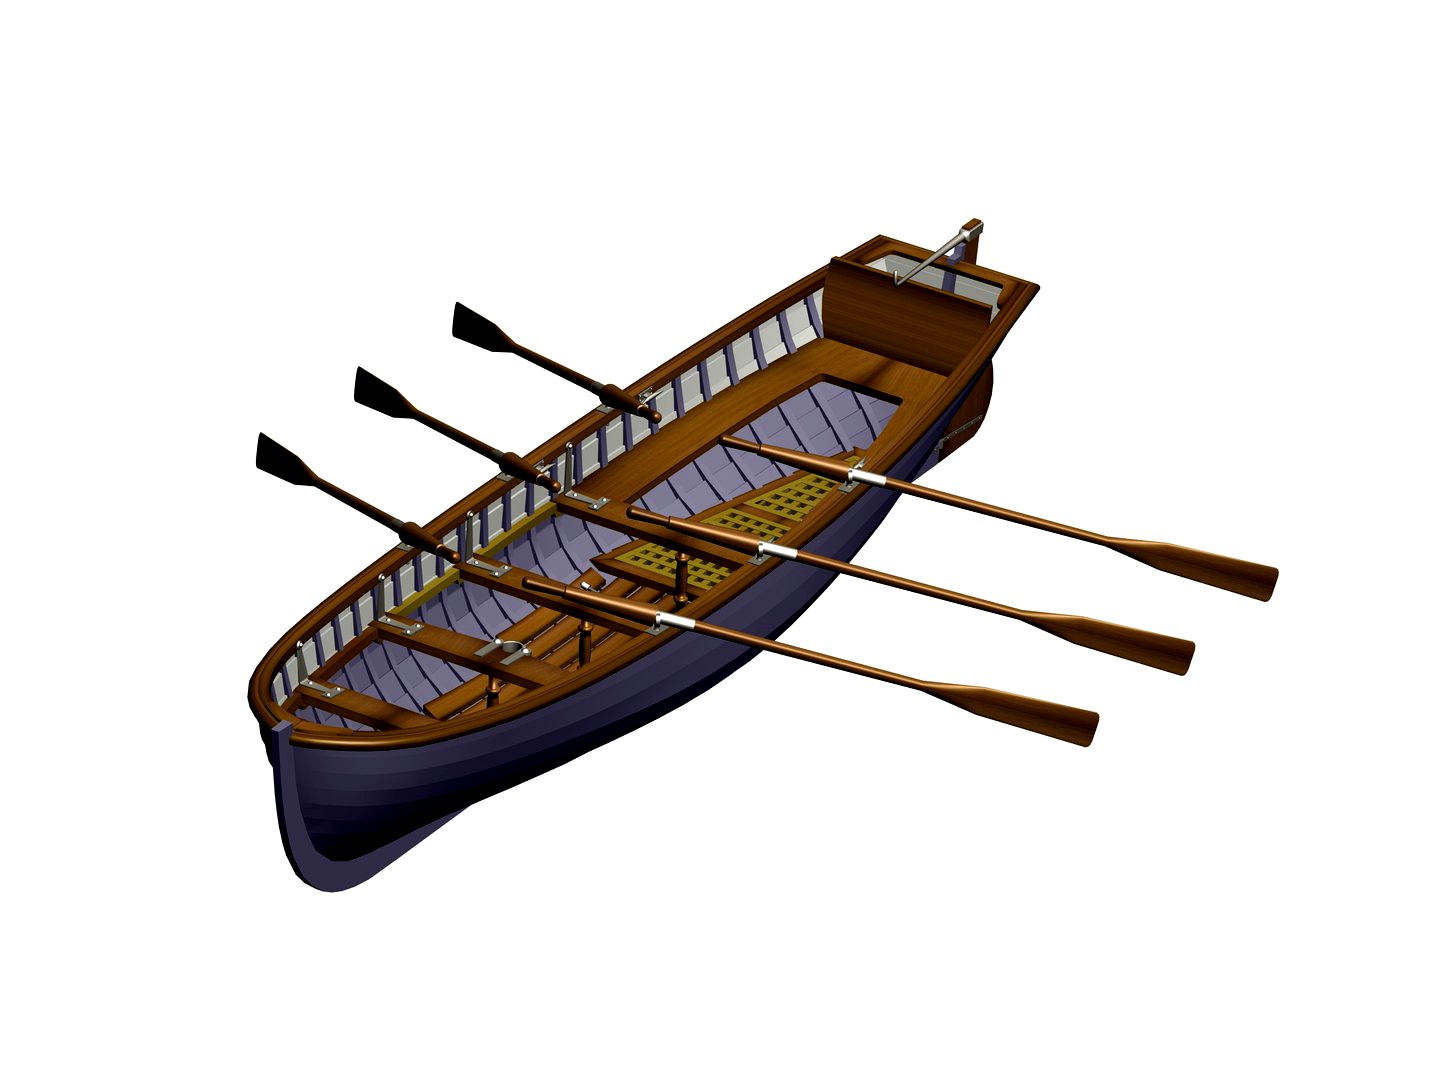 Six-oar yal (boat)